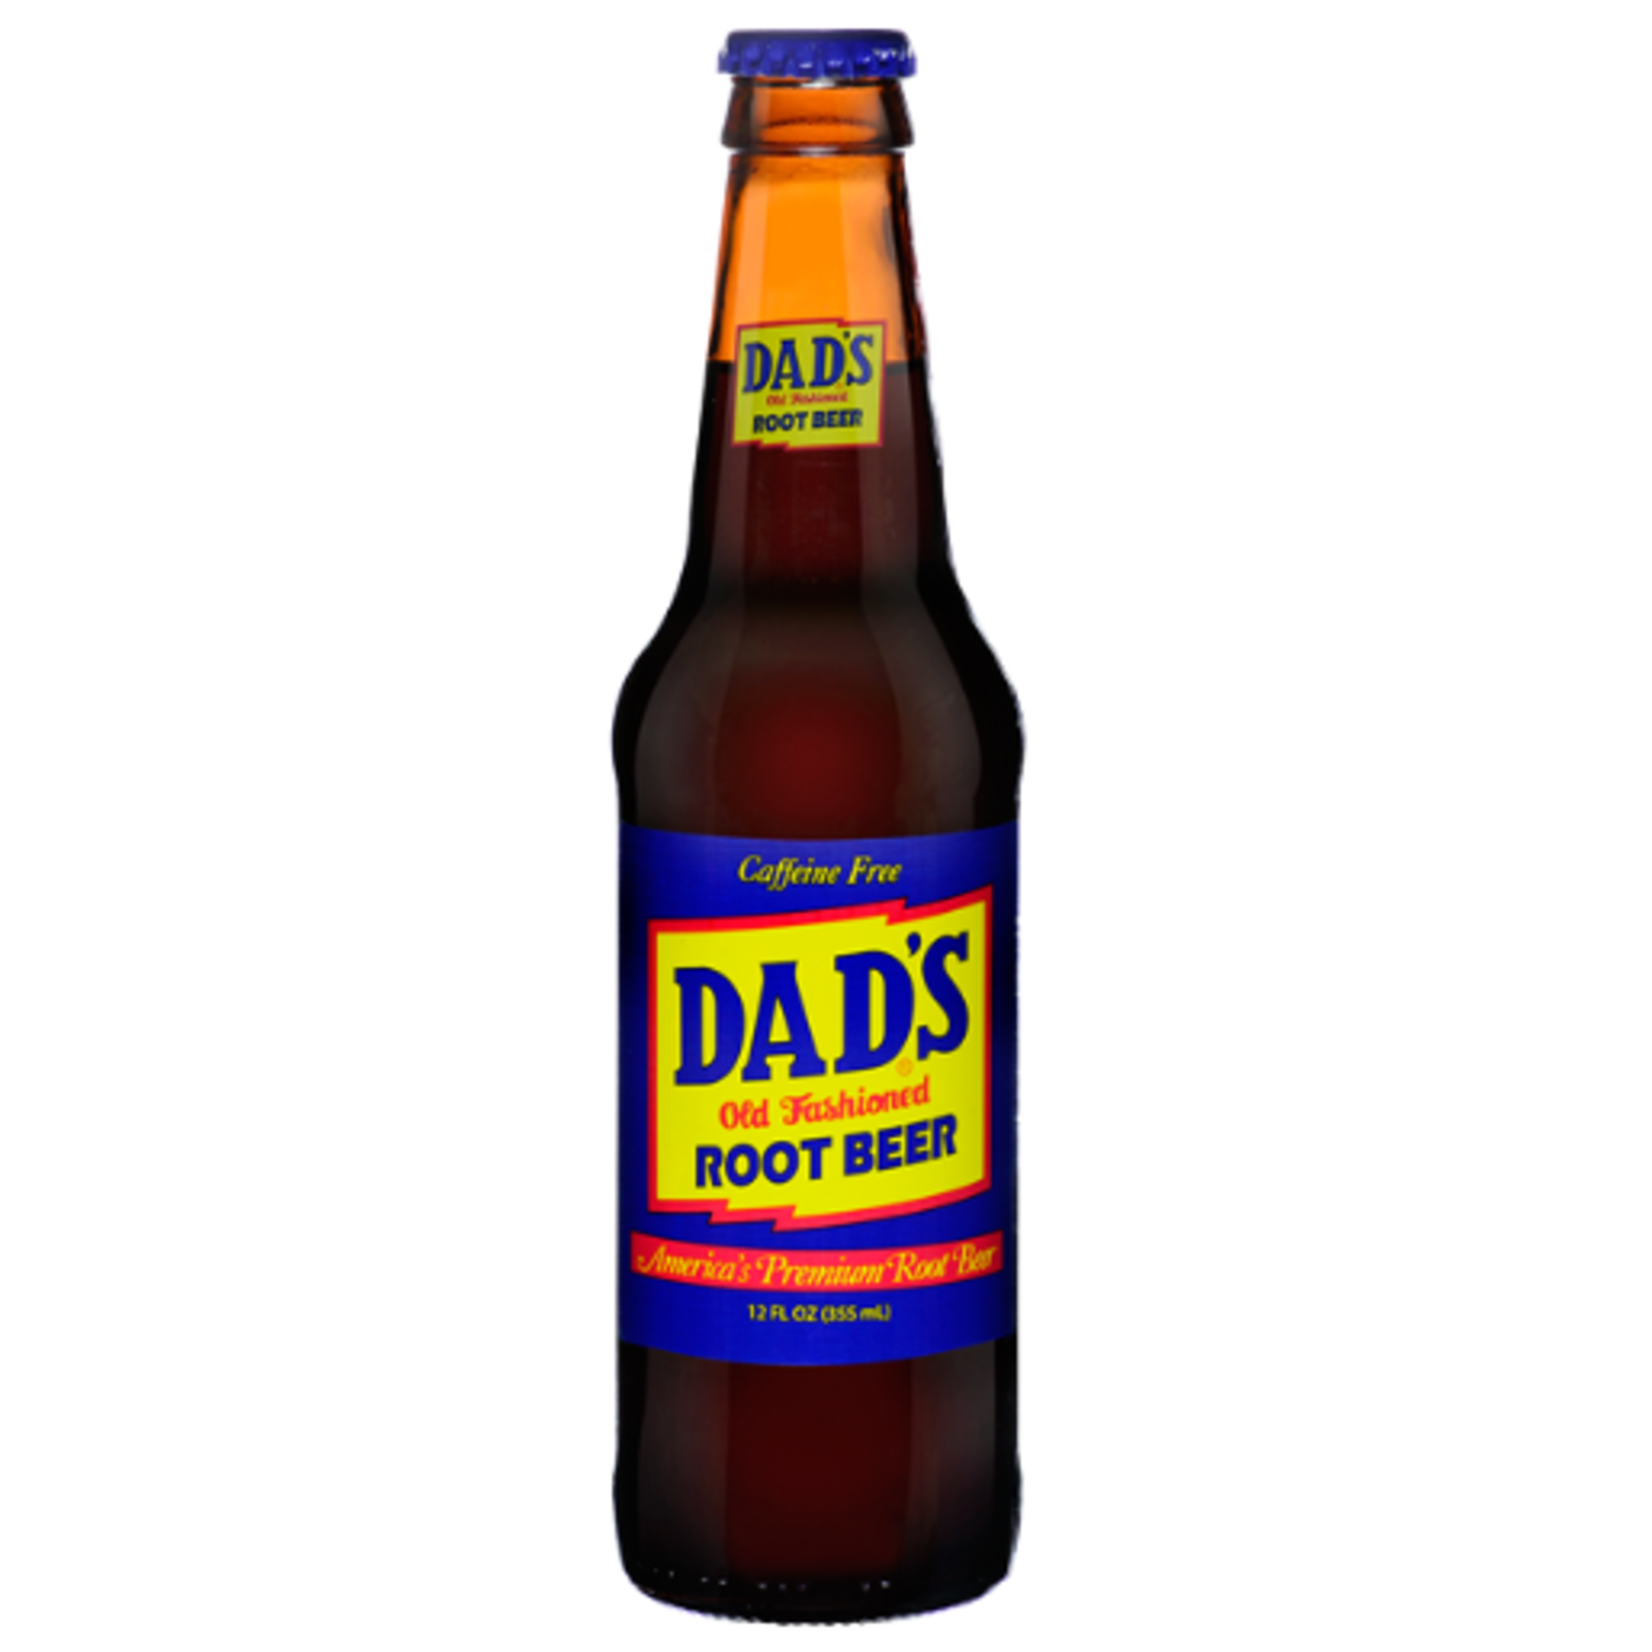 Dad's Root Beer